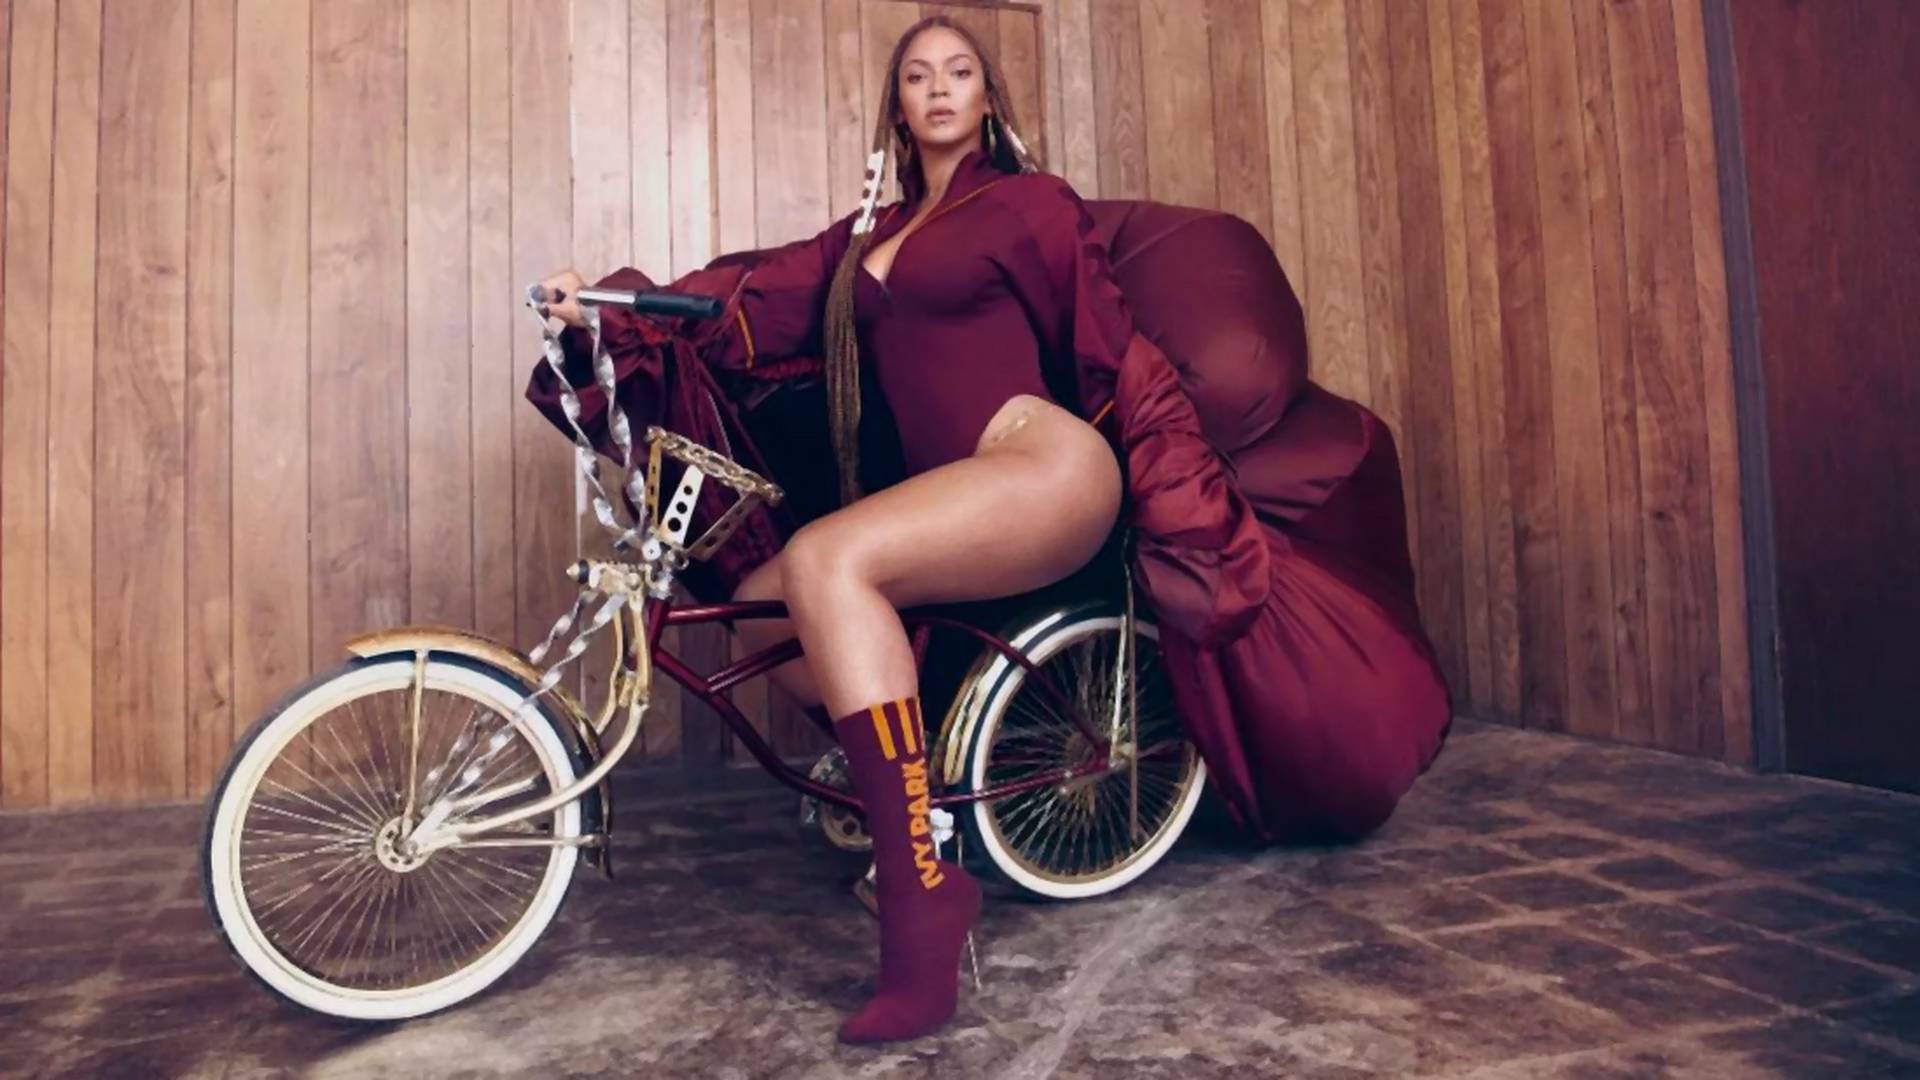 Dopiero styczeń, a Beyoncé już zrobiła sportową kolekcję roku. IVY PARK x adidas już w sprzedaży